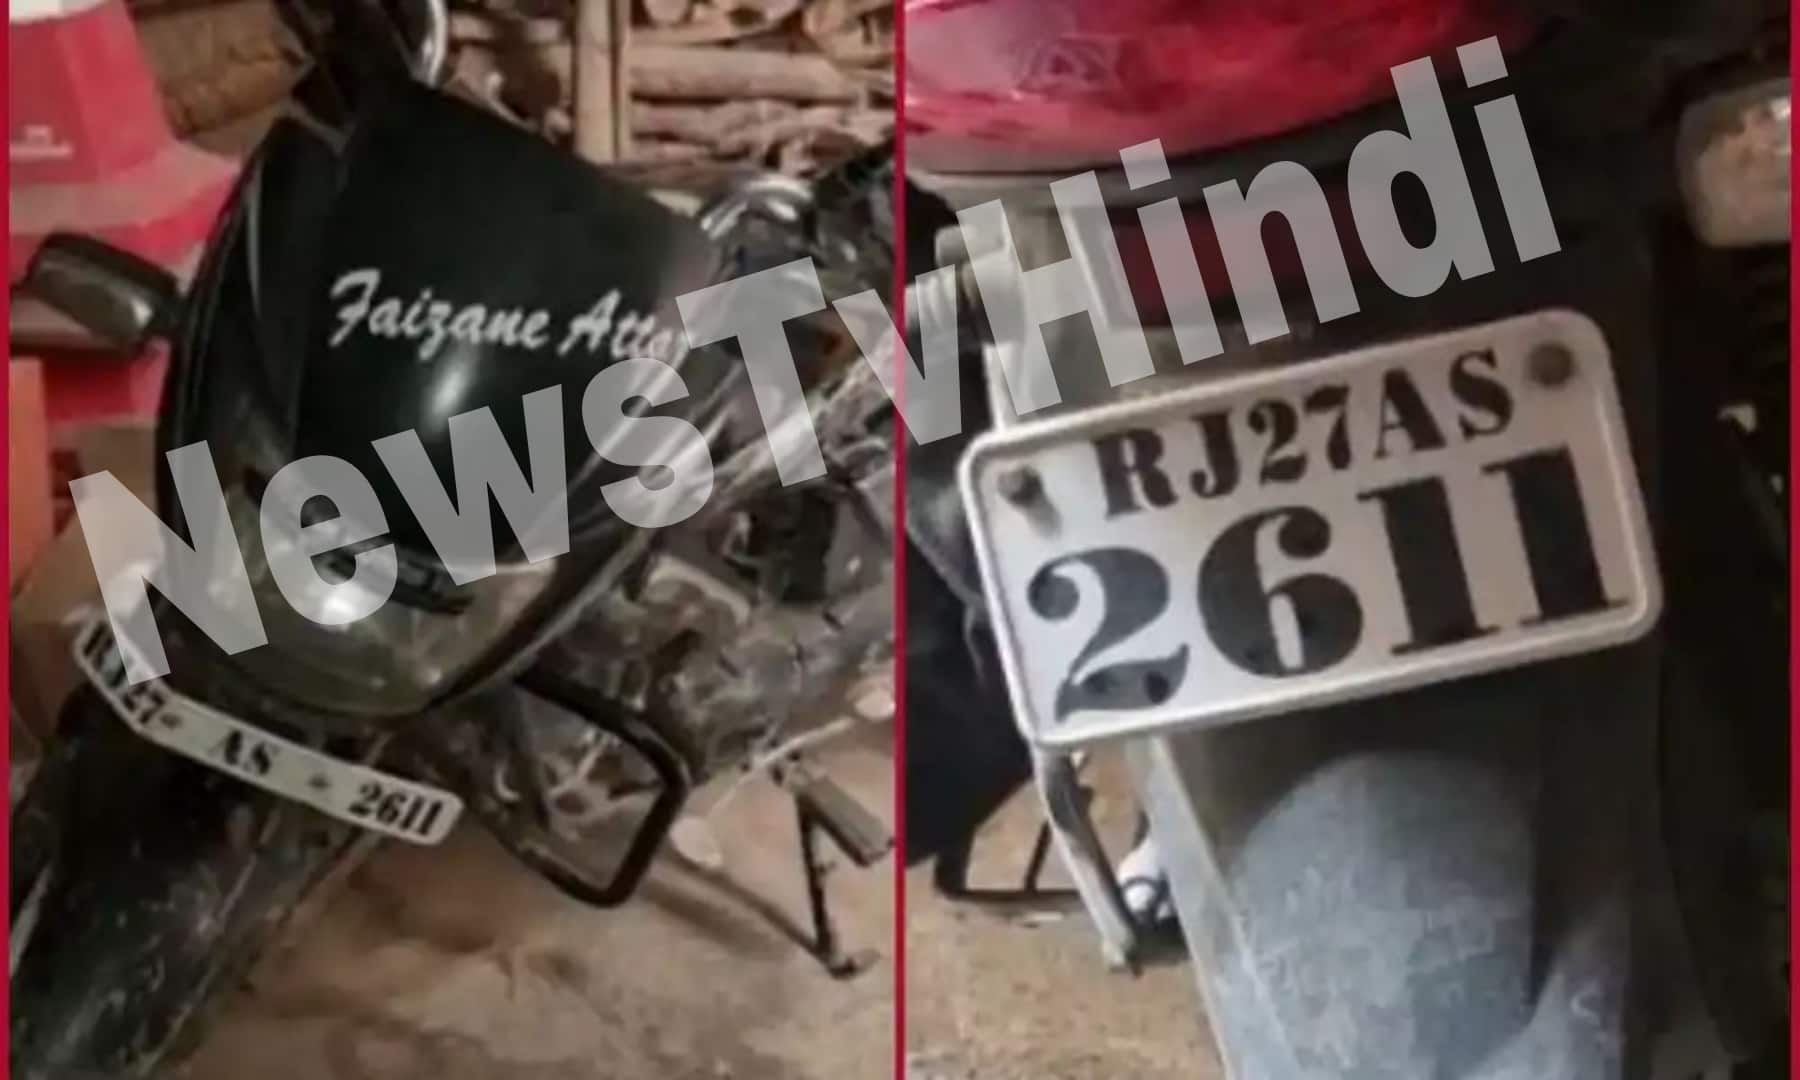 कन्हैया लाल के हत्यारे लाइसेंस प्लेट 26-11 के साथ बाइक पर भाग गए, जिसे रियाज ने 5000 रुपये में खरीदा था।